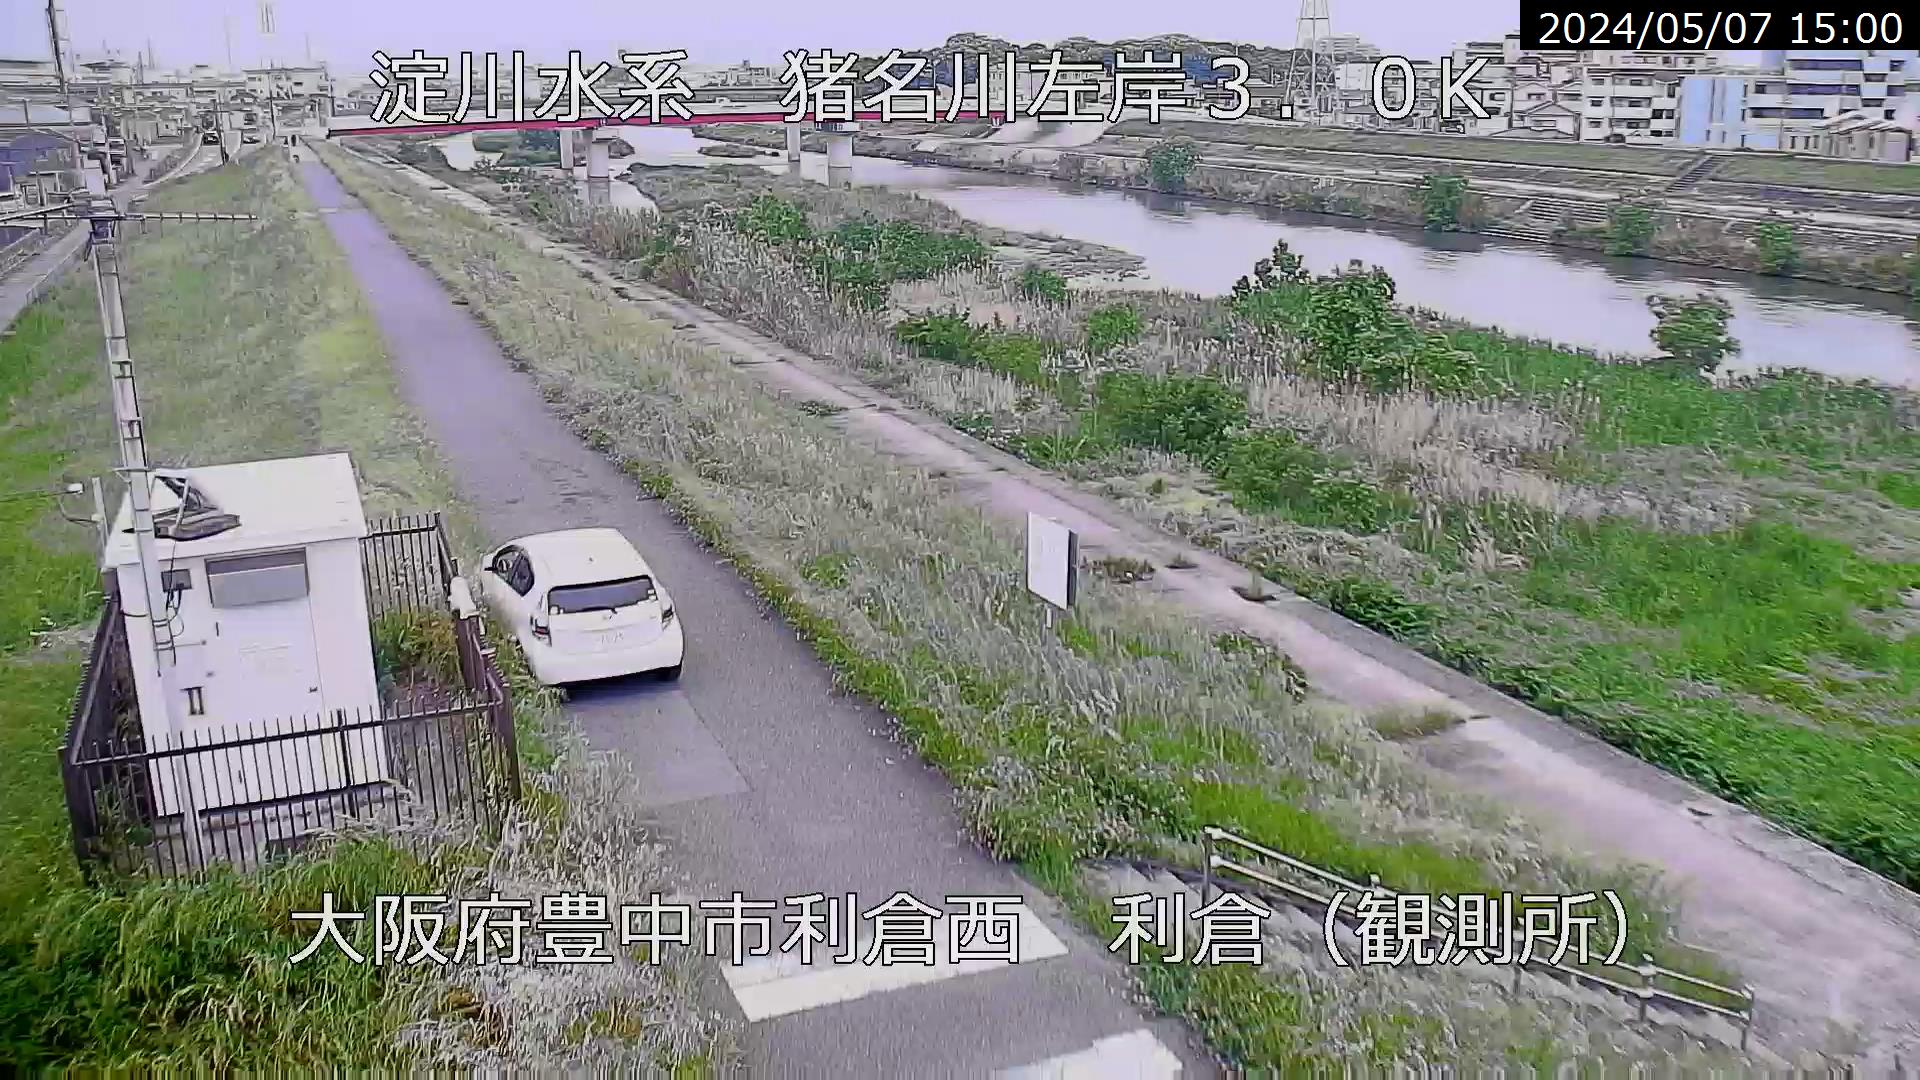 兵庫県の河川ライブカメラ｢猪名川 豊中市利倉西｣のライブ画像